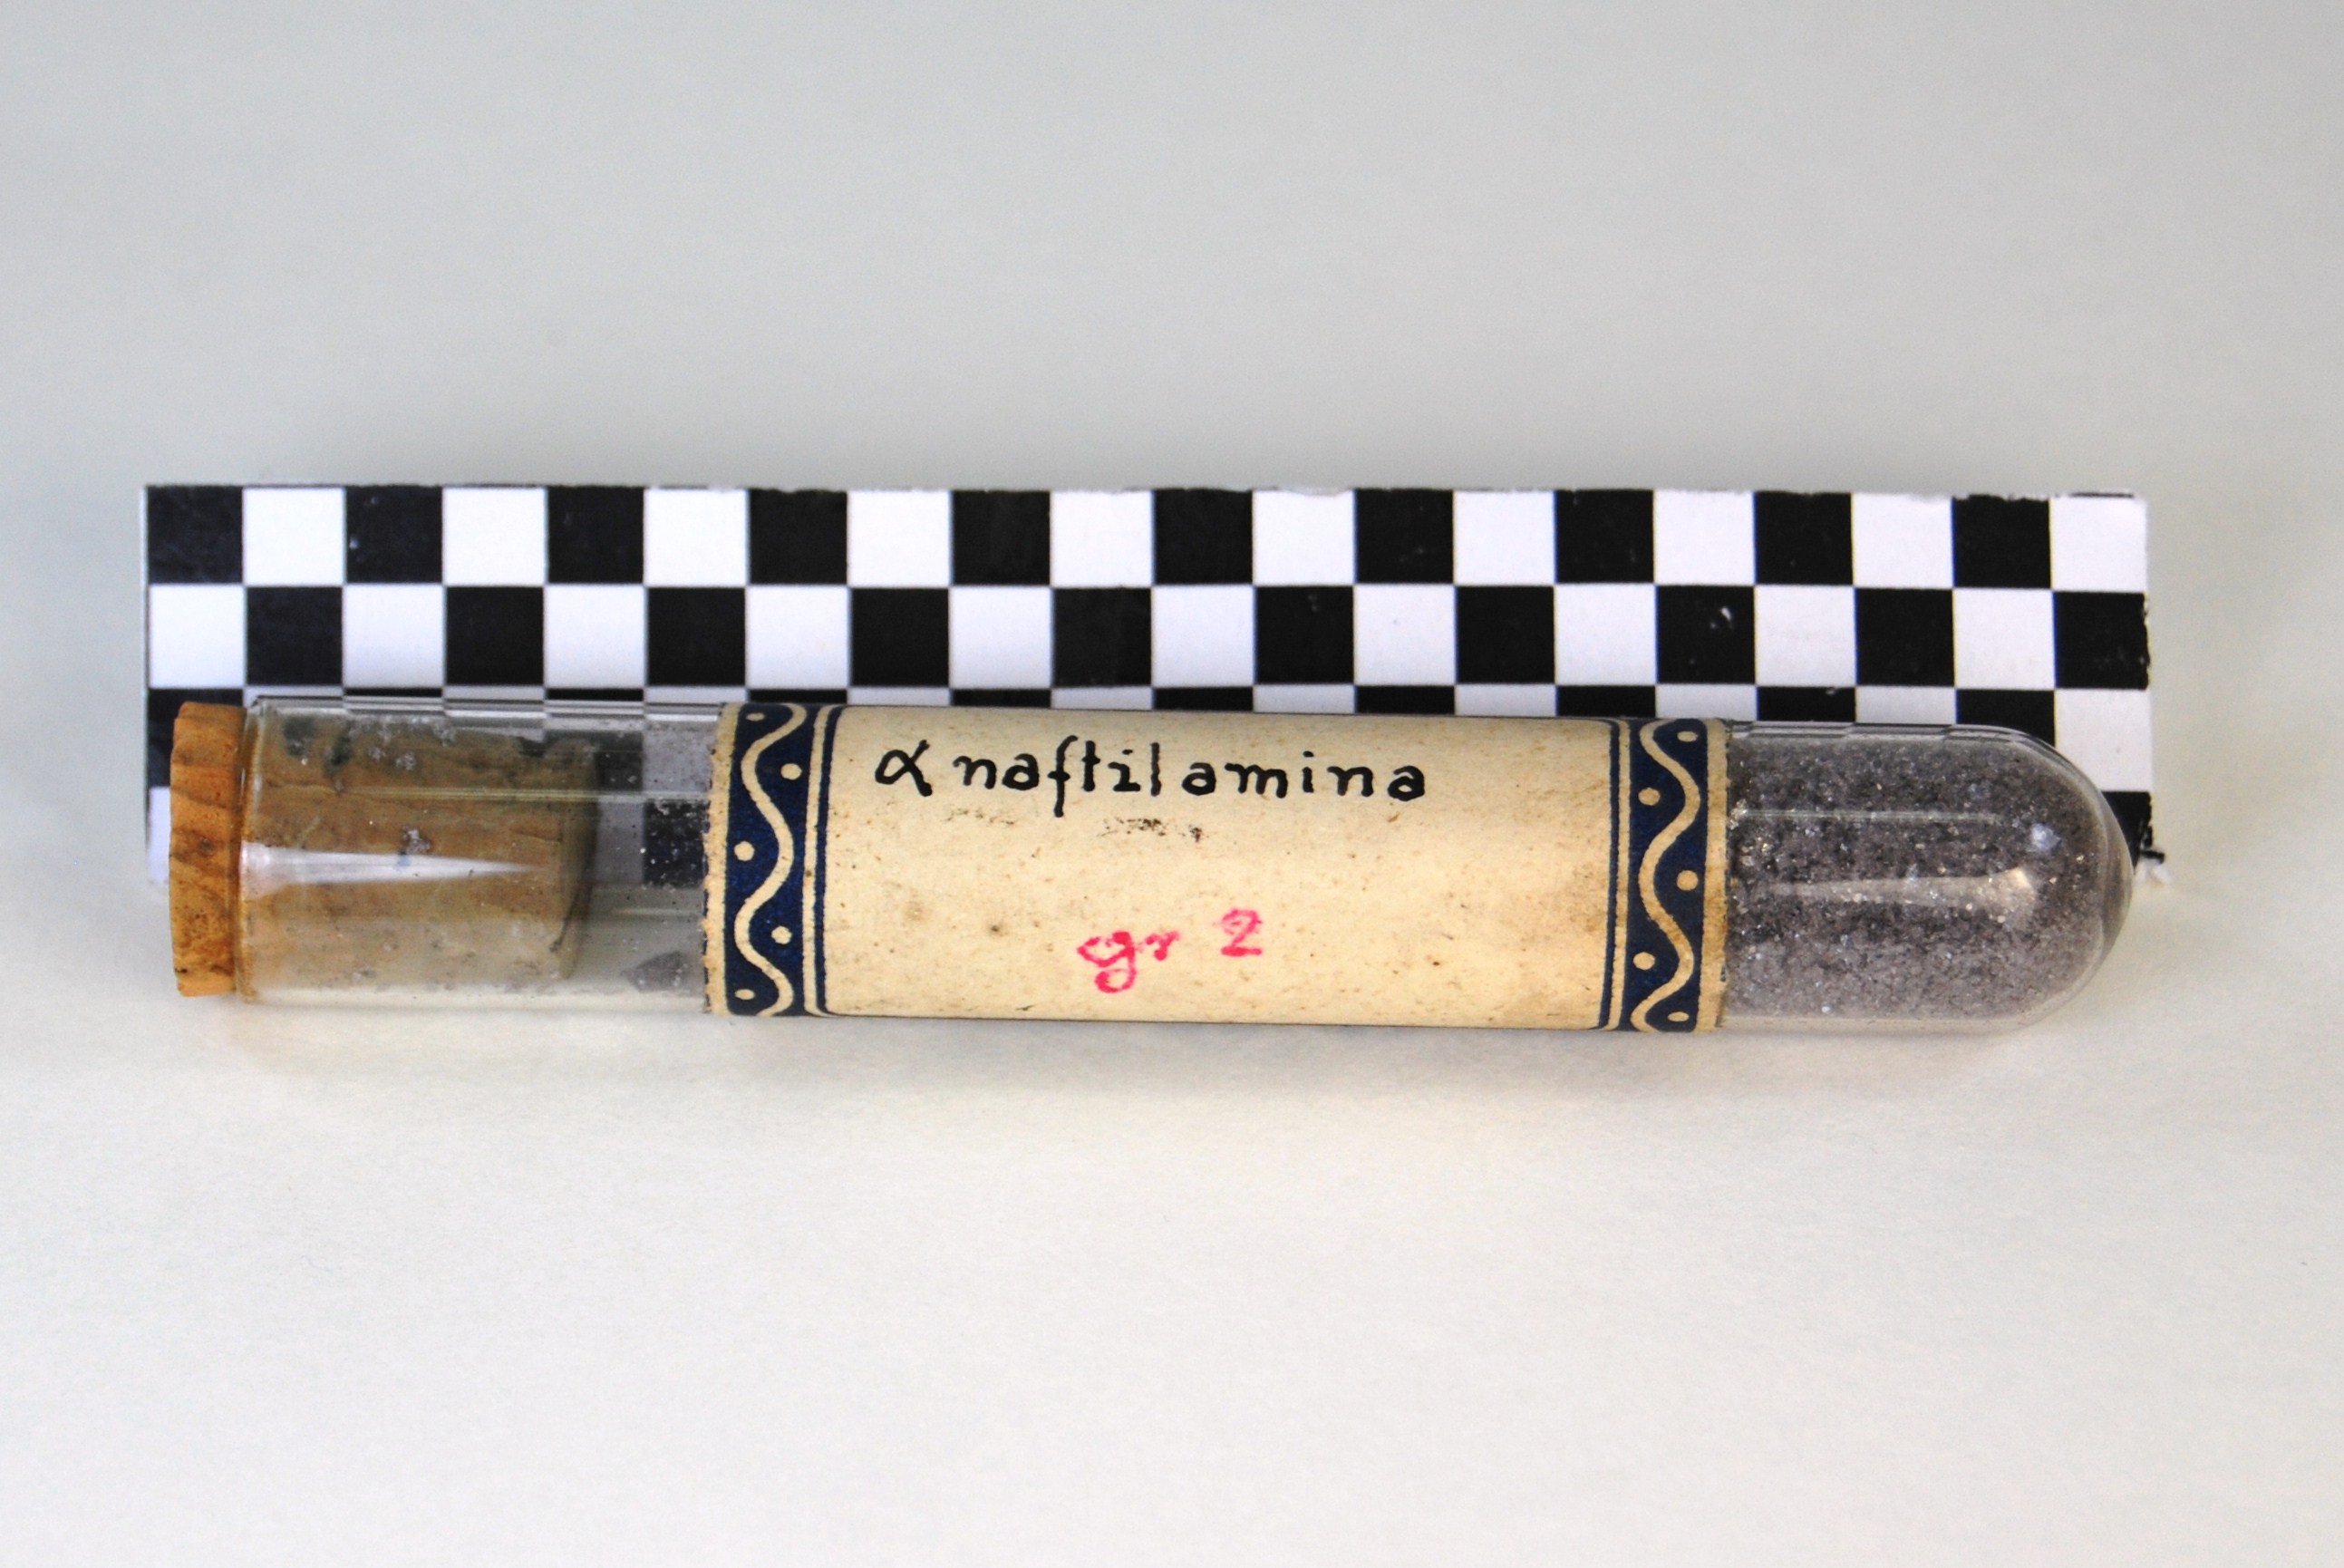 alfa-naftilamina (prodotto chimico, di sintesi) di Ugo Schiff (laboratorio) - scuola chimica fiorentina (metà/ inizio XIX/ XX)